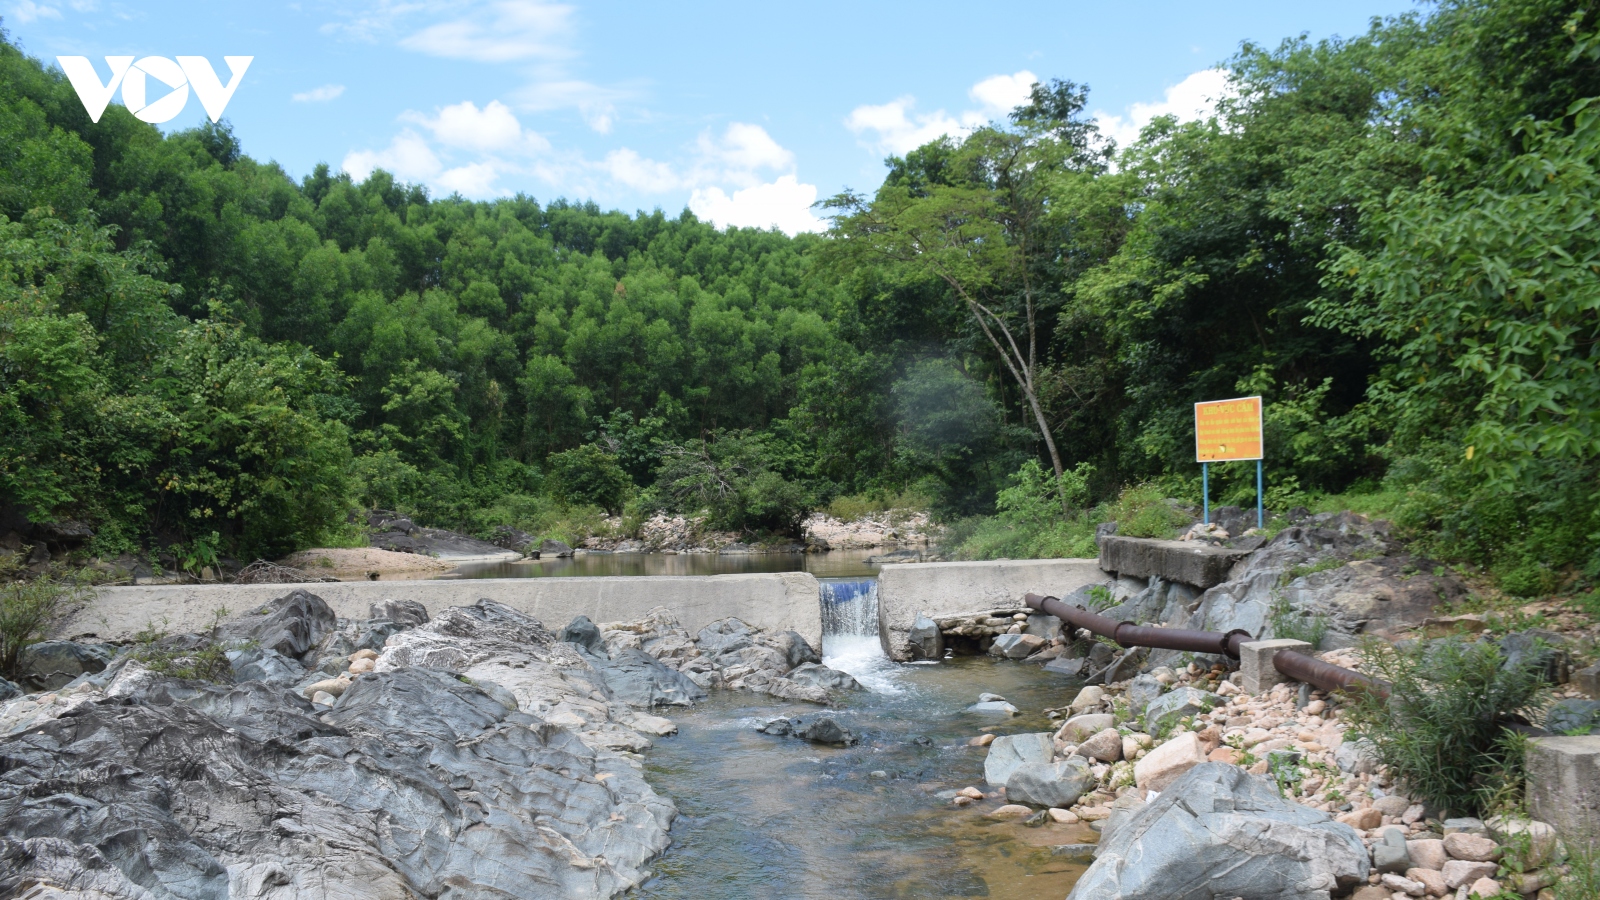 Nhiều công trình cấp nước sinh hoạt ở miền núi Bình Định xuống cấp